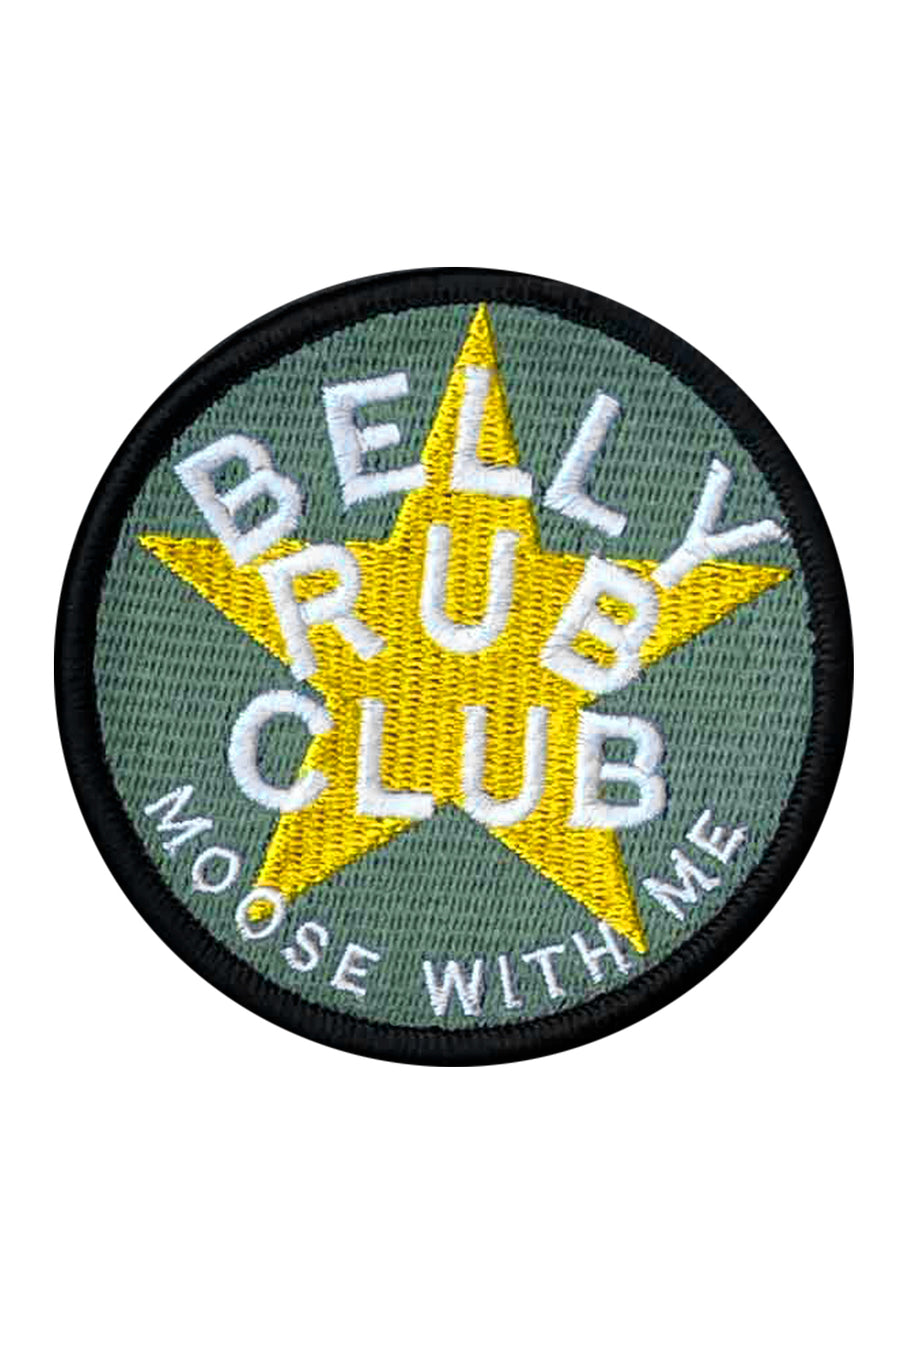 Patch Belly Rub Club